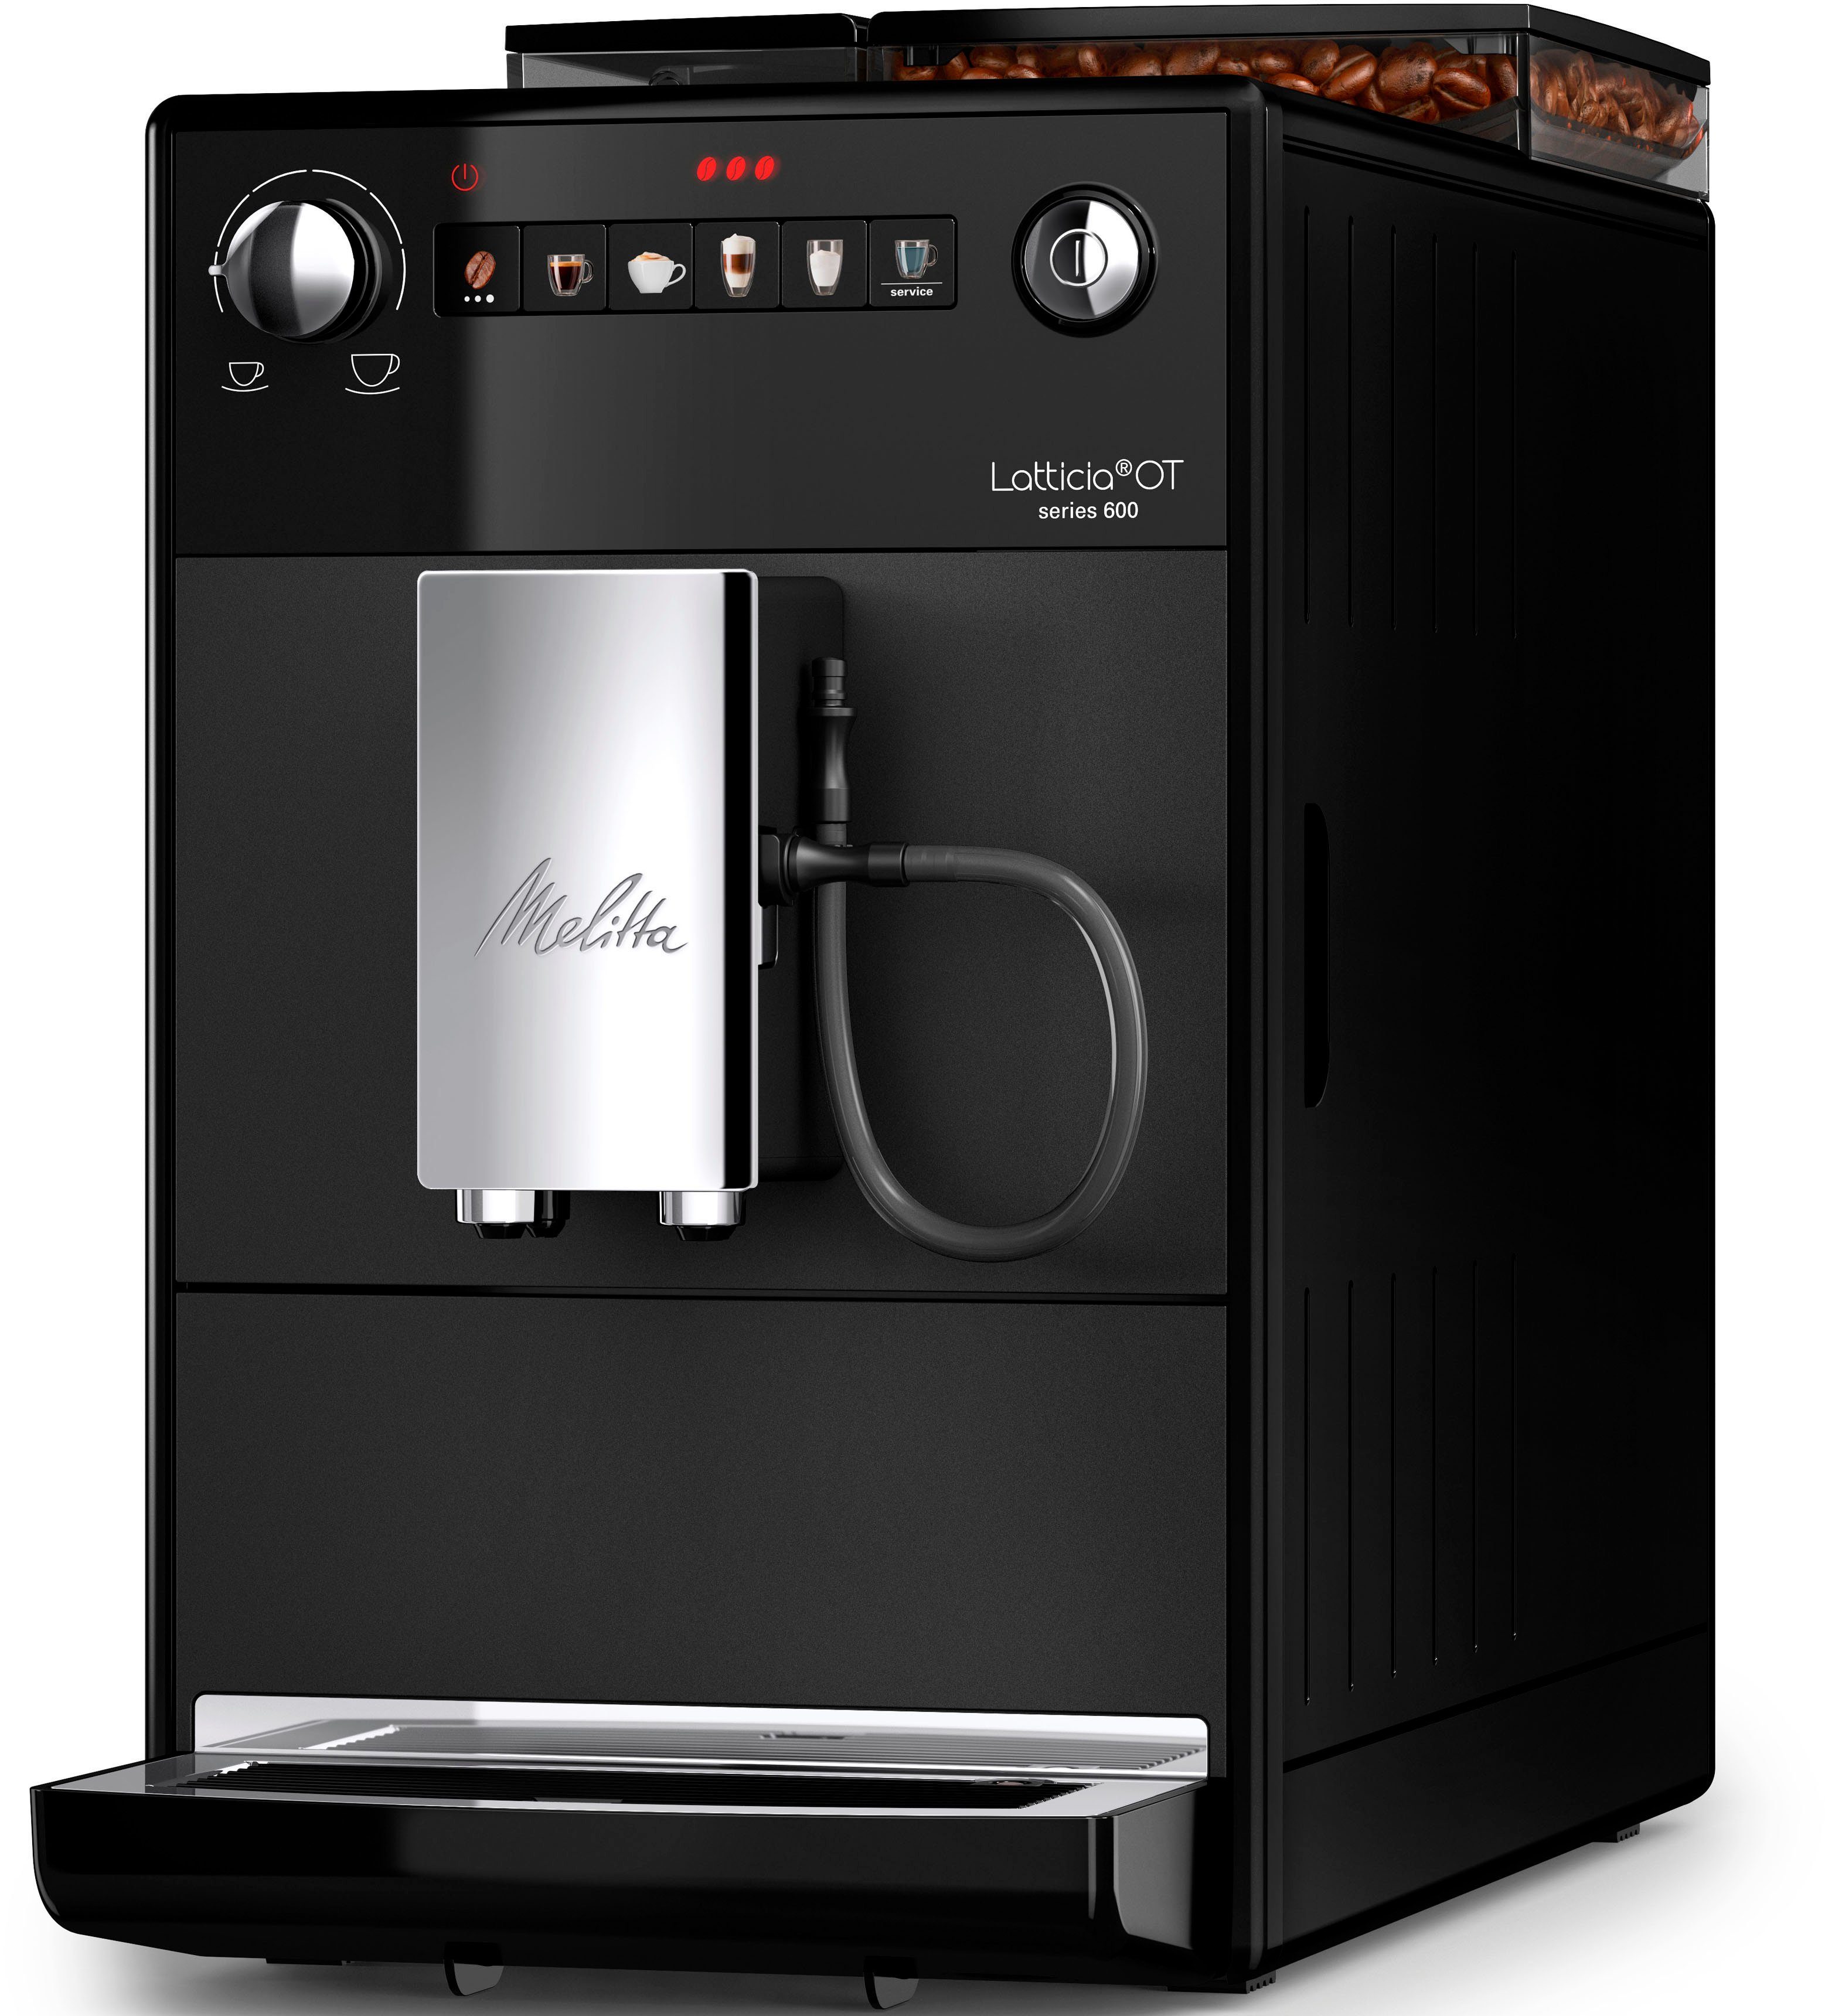 Latticia® schwarz, One Touch Wassertank XL F300-100, Bohnenbehälter kompakt, Kaffeevollautomat XL Melitta & aber